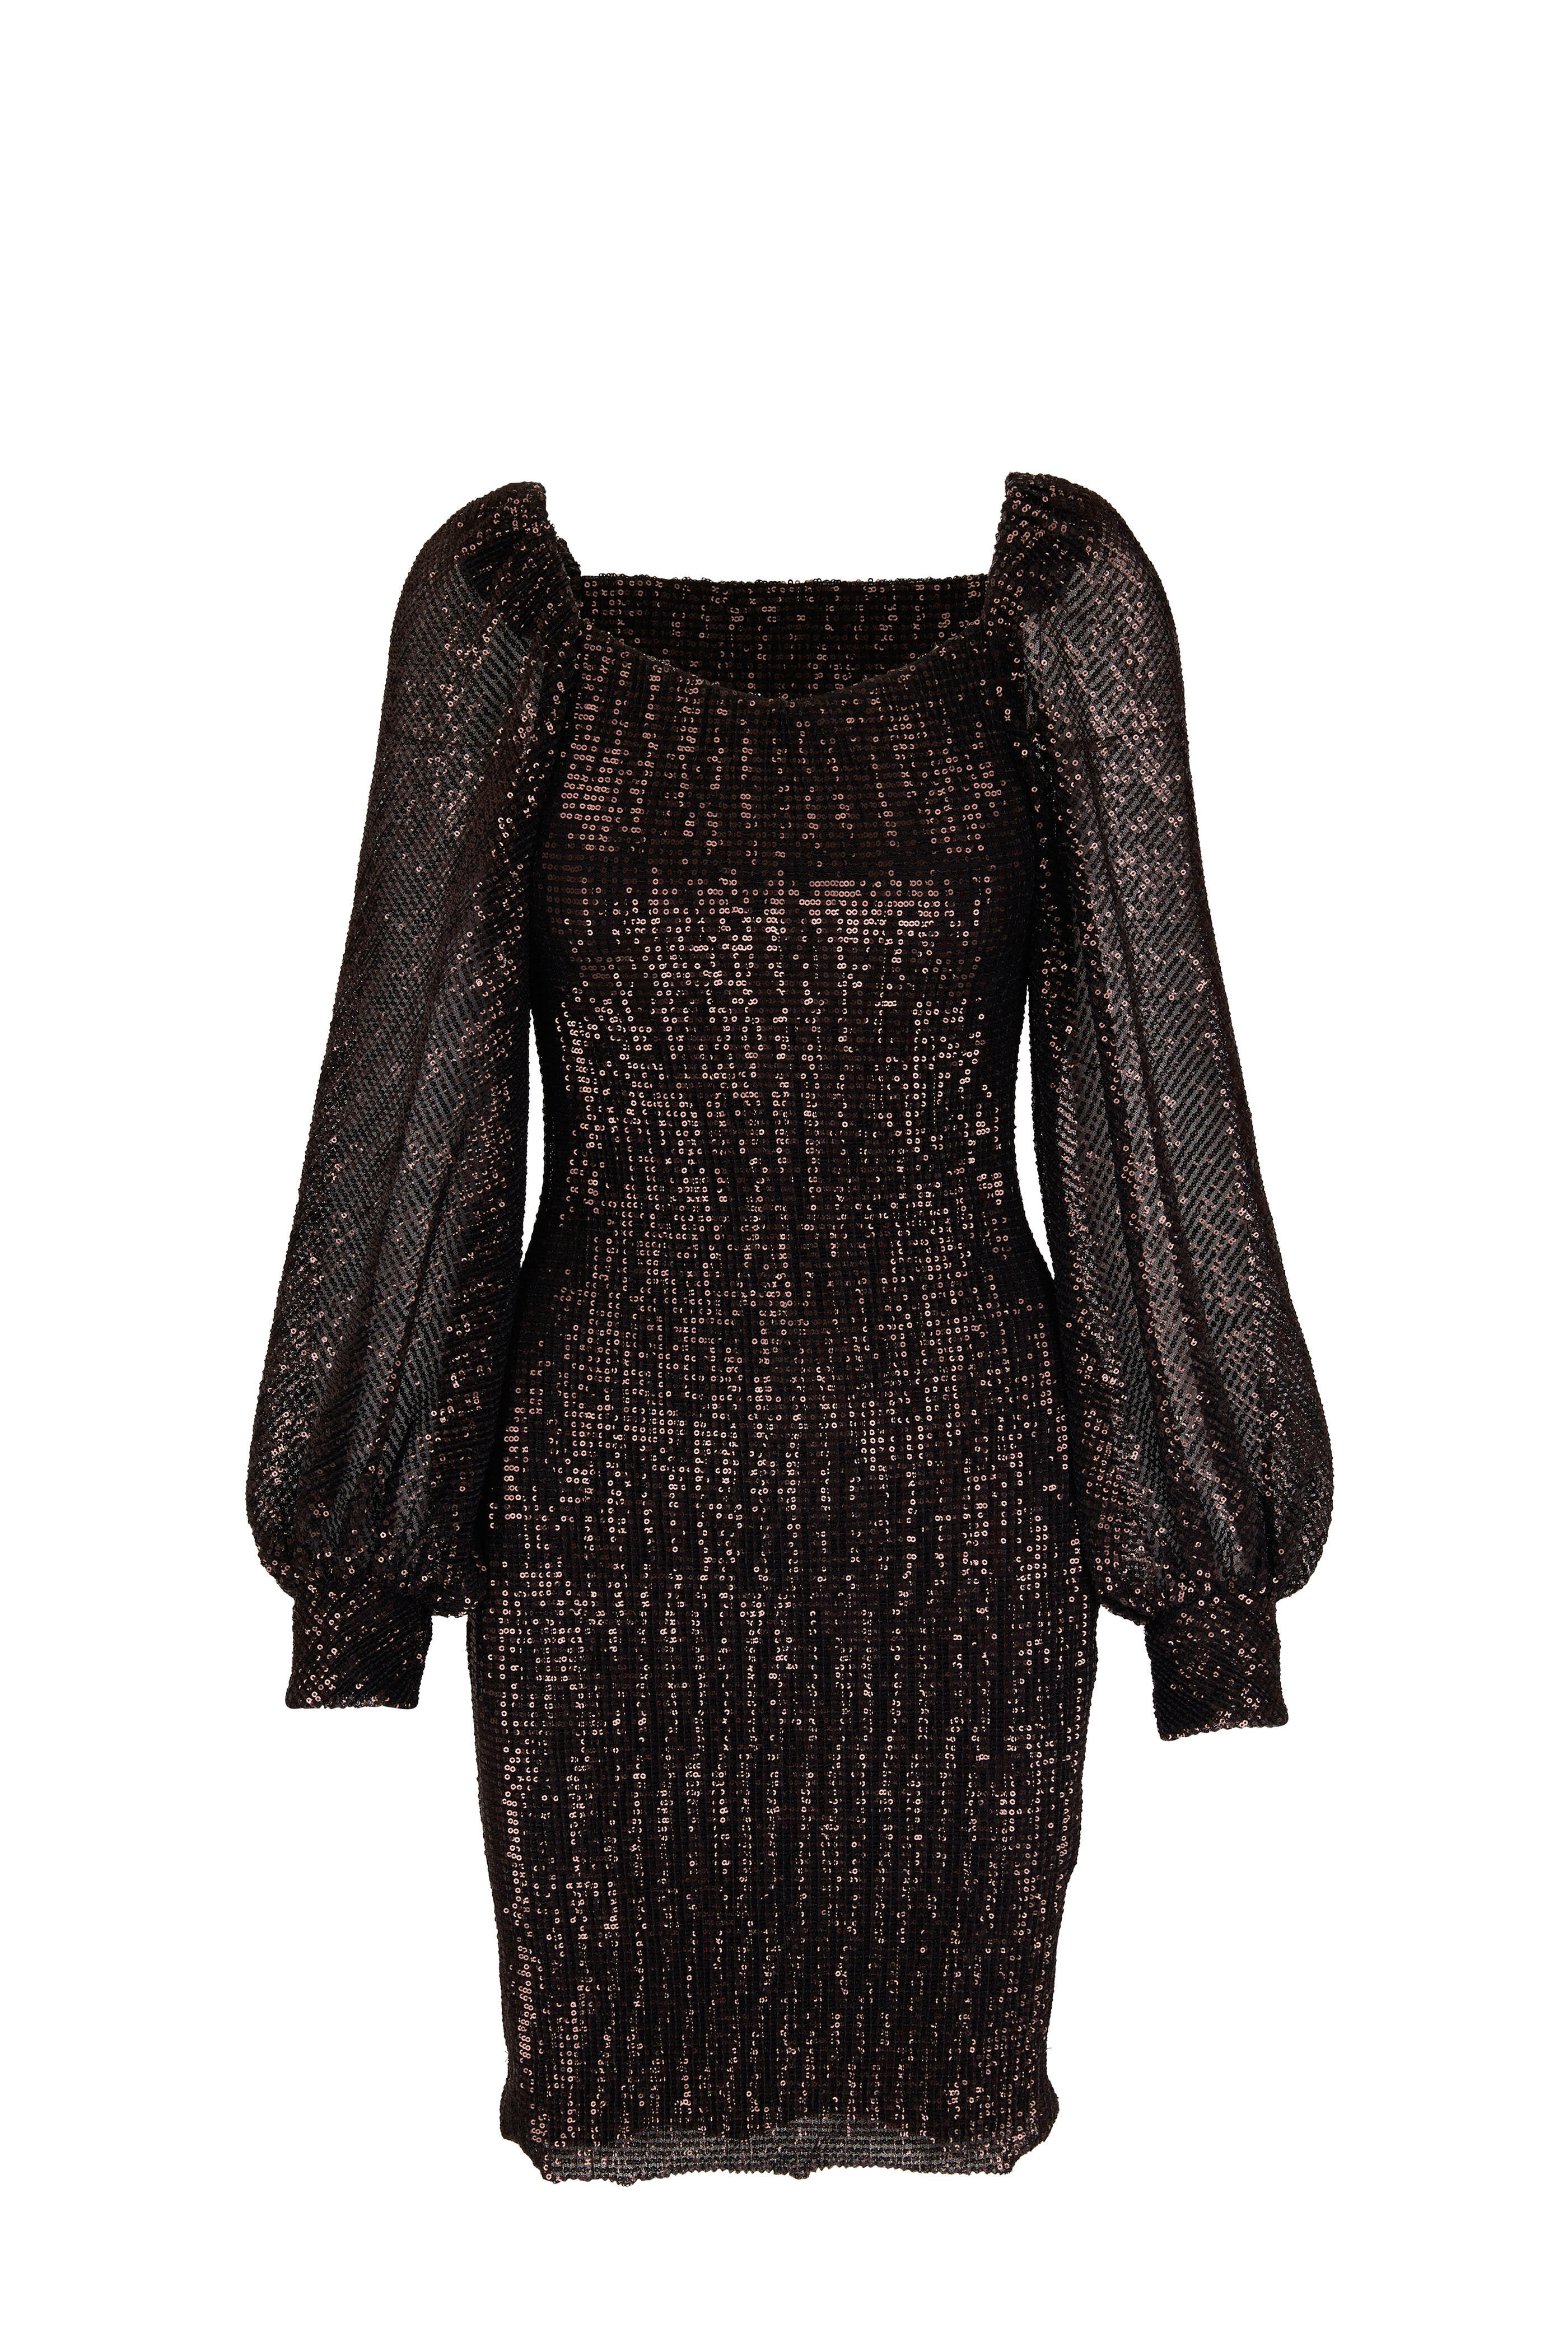 Dorothee Schumacher - Sparkling Moment Dark Brown Sequins Mini Dress